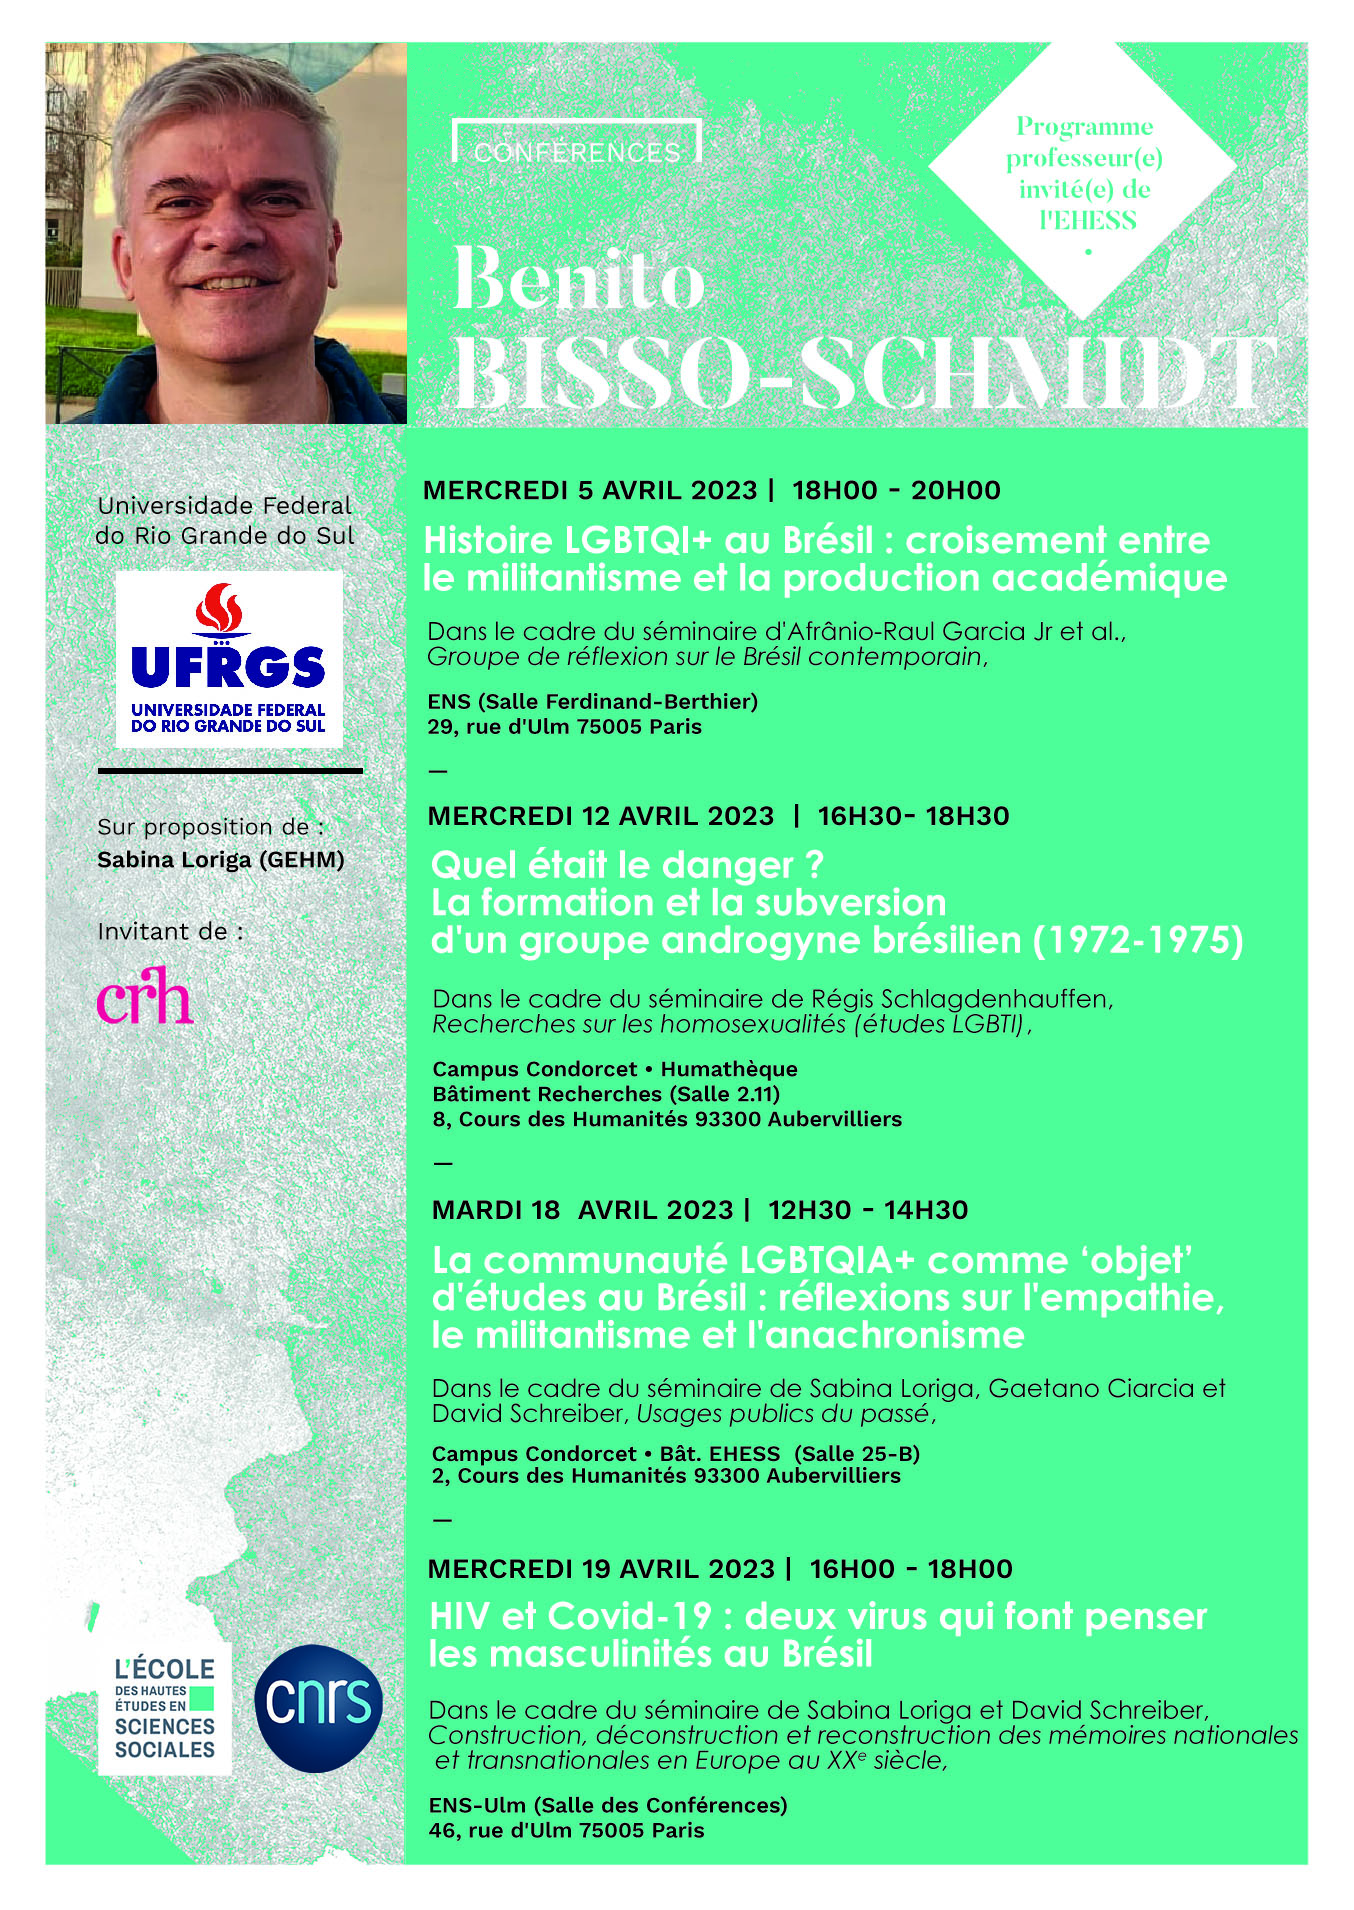 Benito Bisso-Schmidt (Universidade Federale do Rio Grande do Sul)